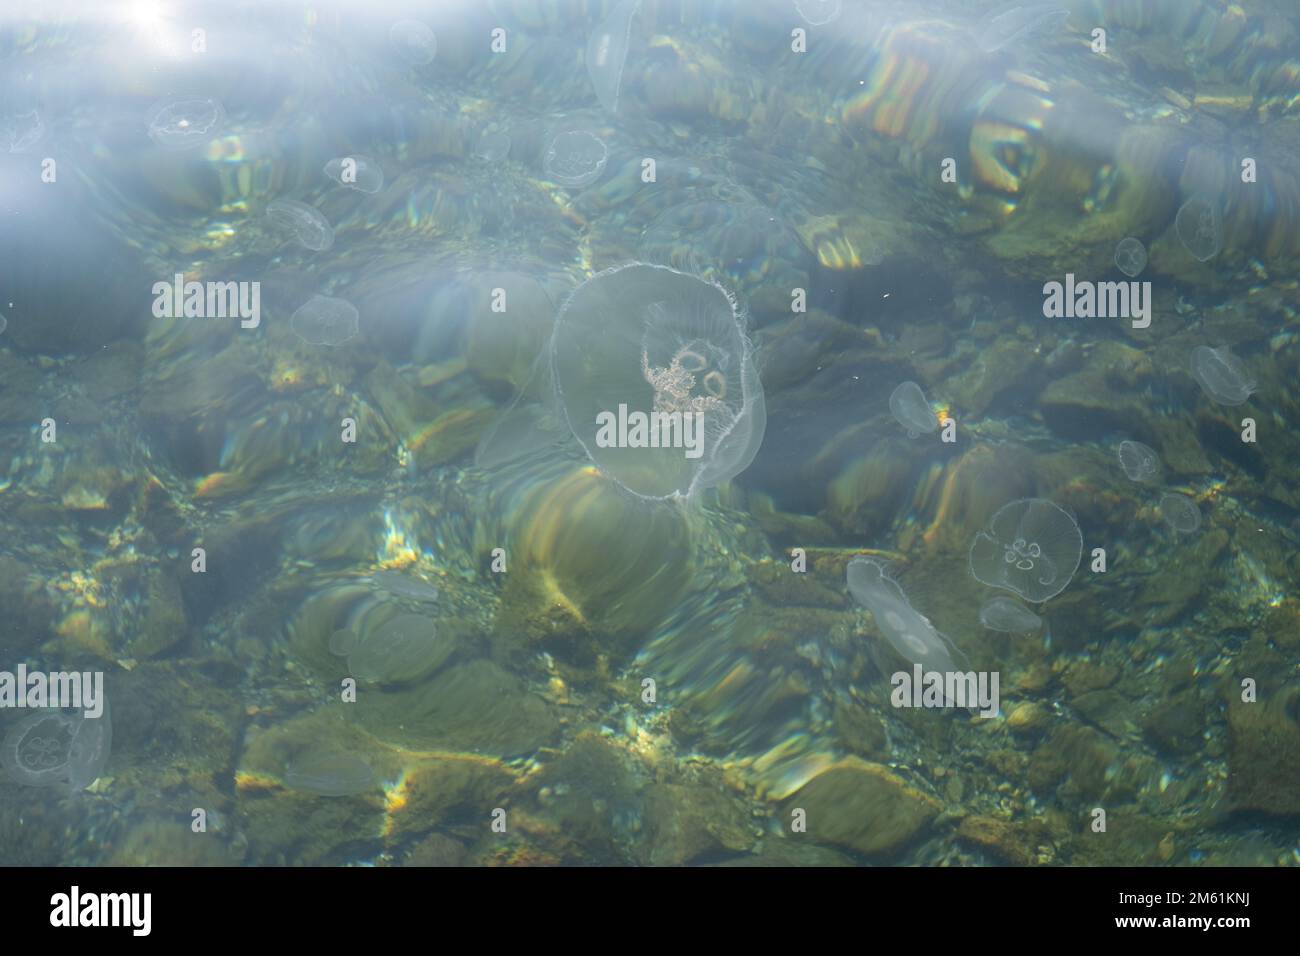 Un gruppo di meduse che nuotano in acqua. Medusa galleggiante. Foto Stock